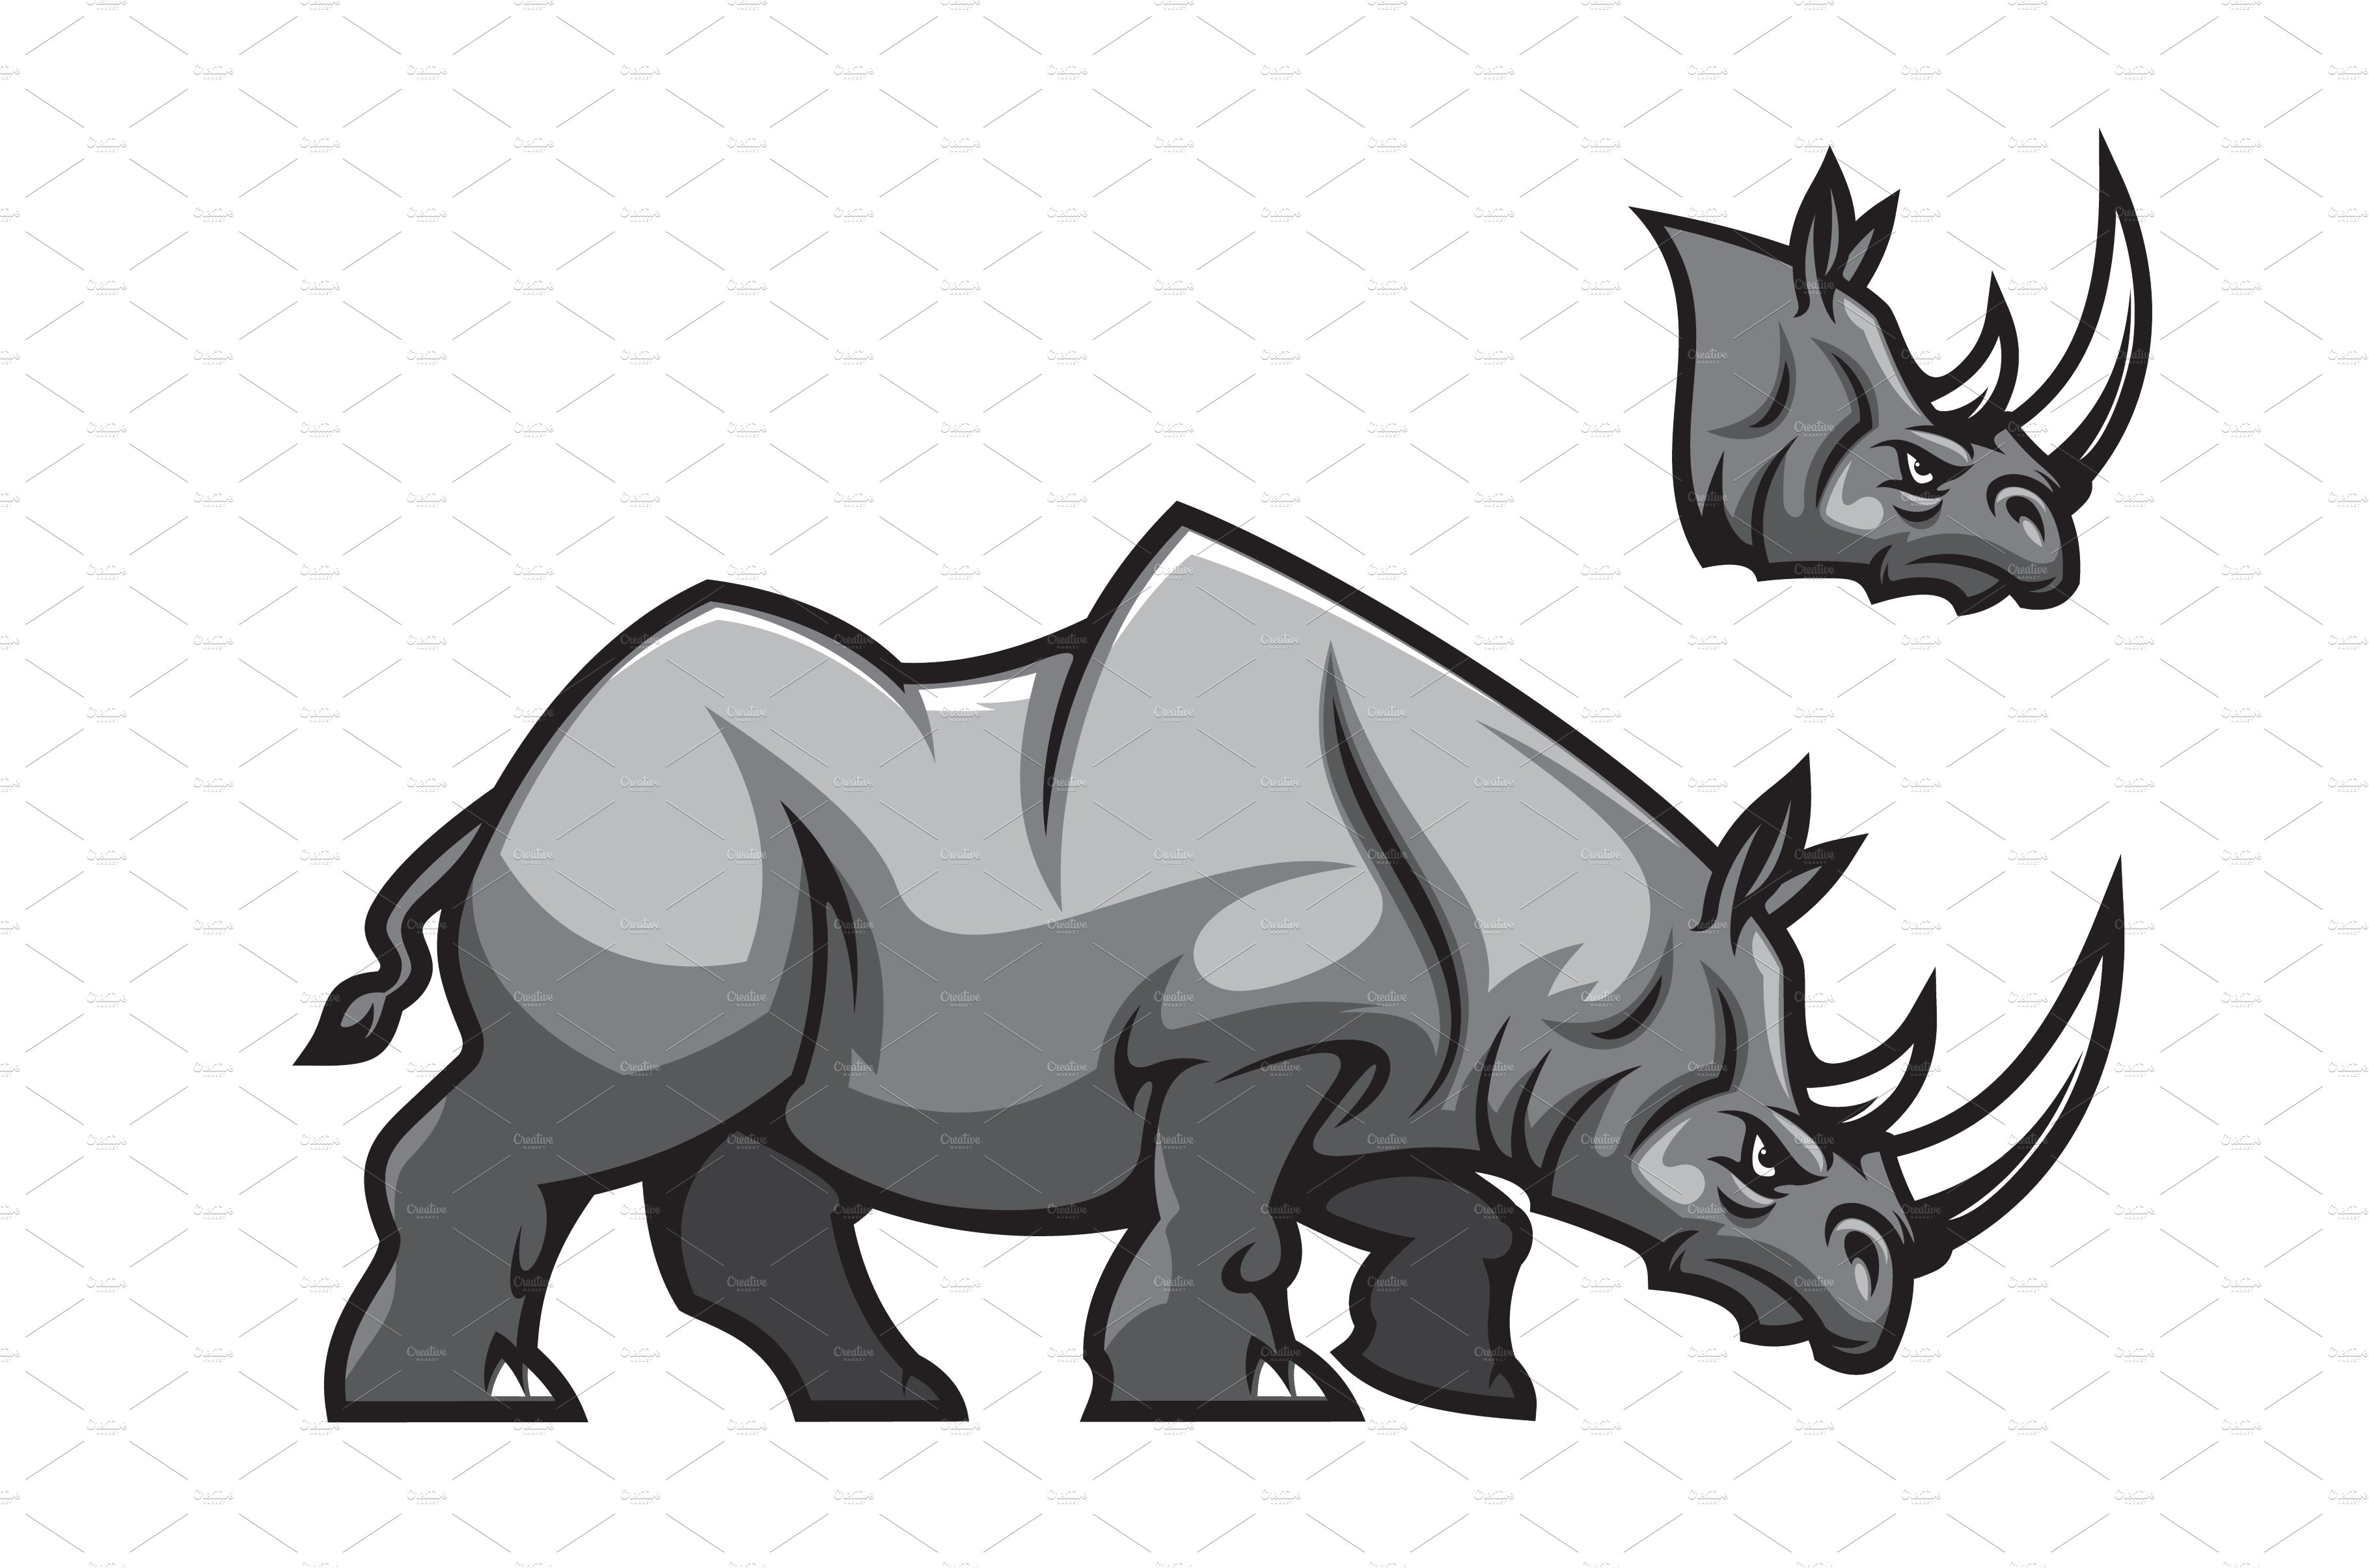 Aggressive rhino mascot cover image.